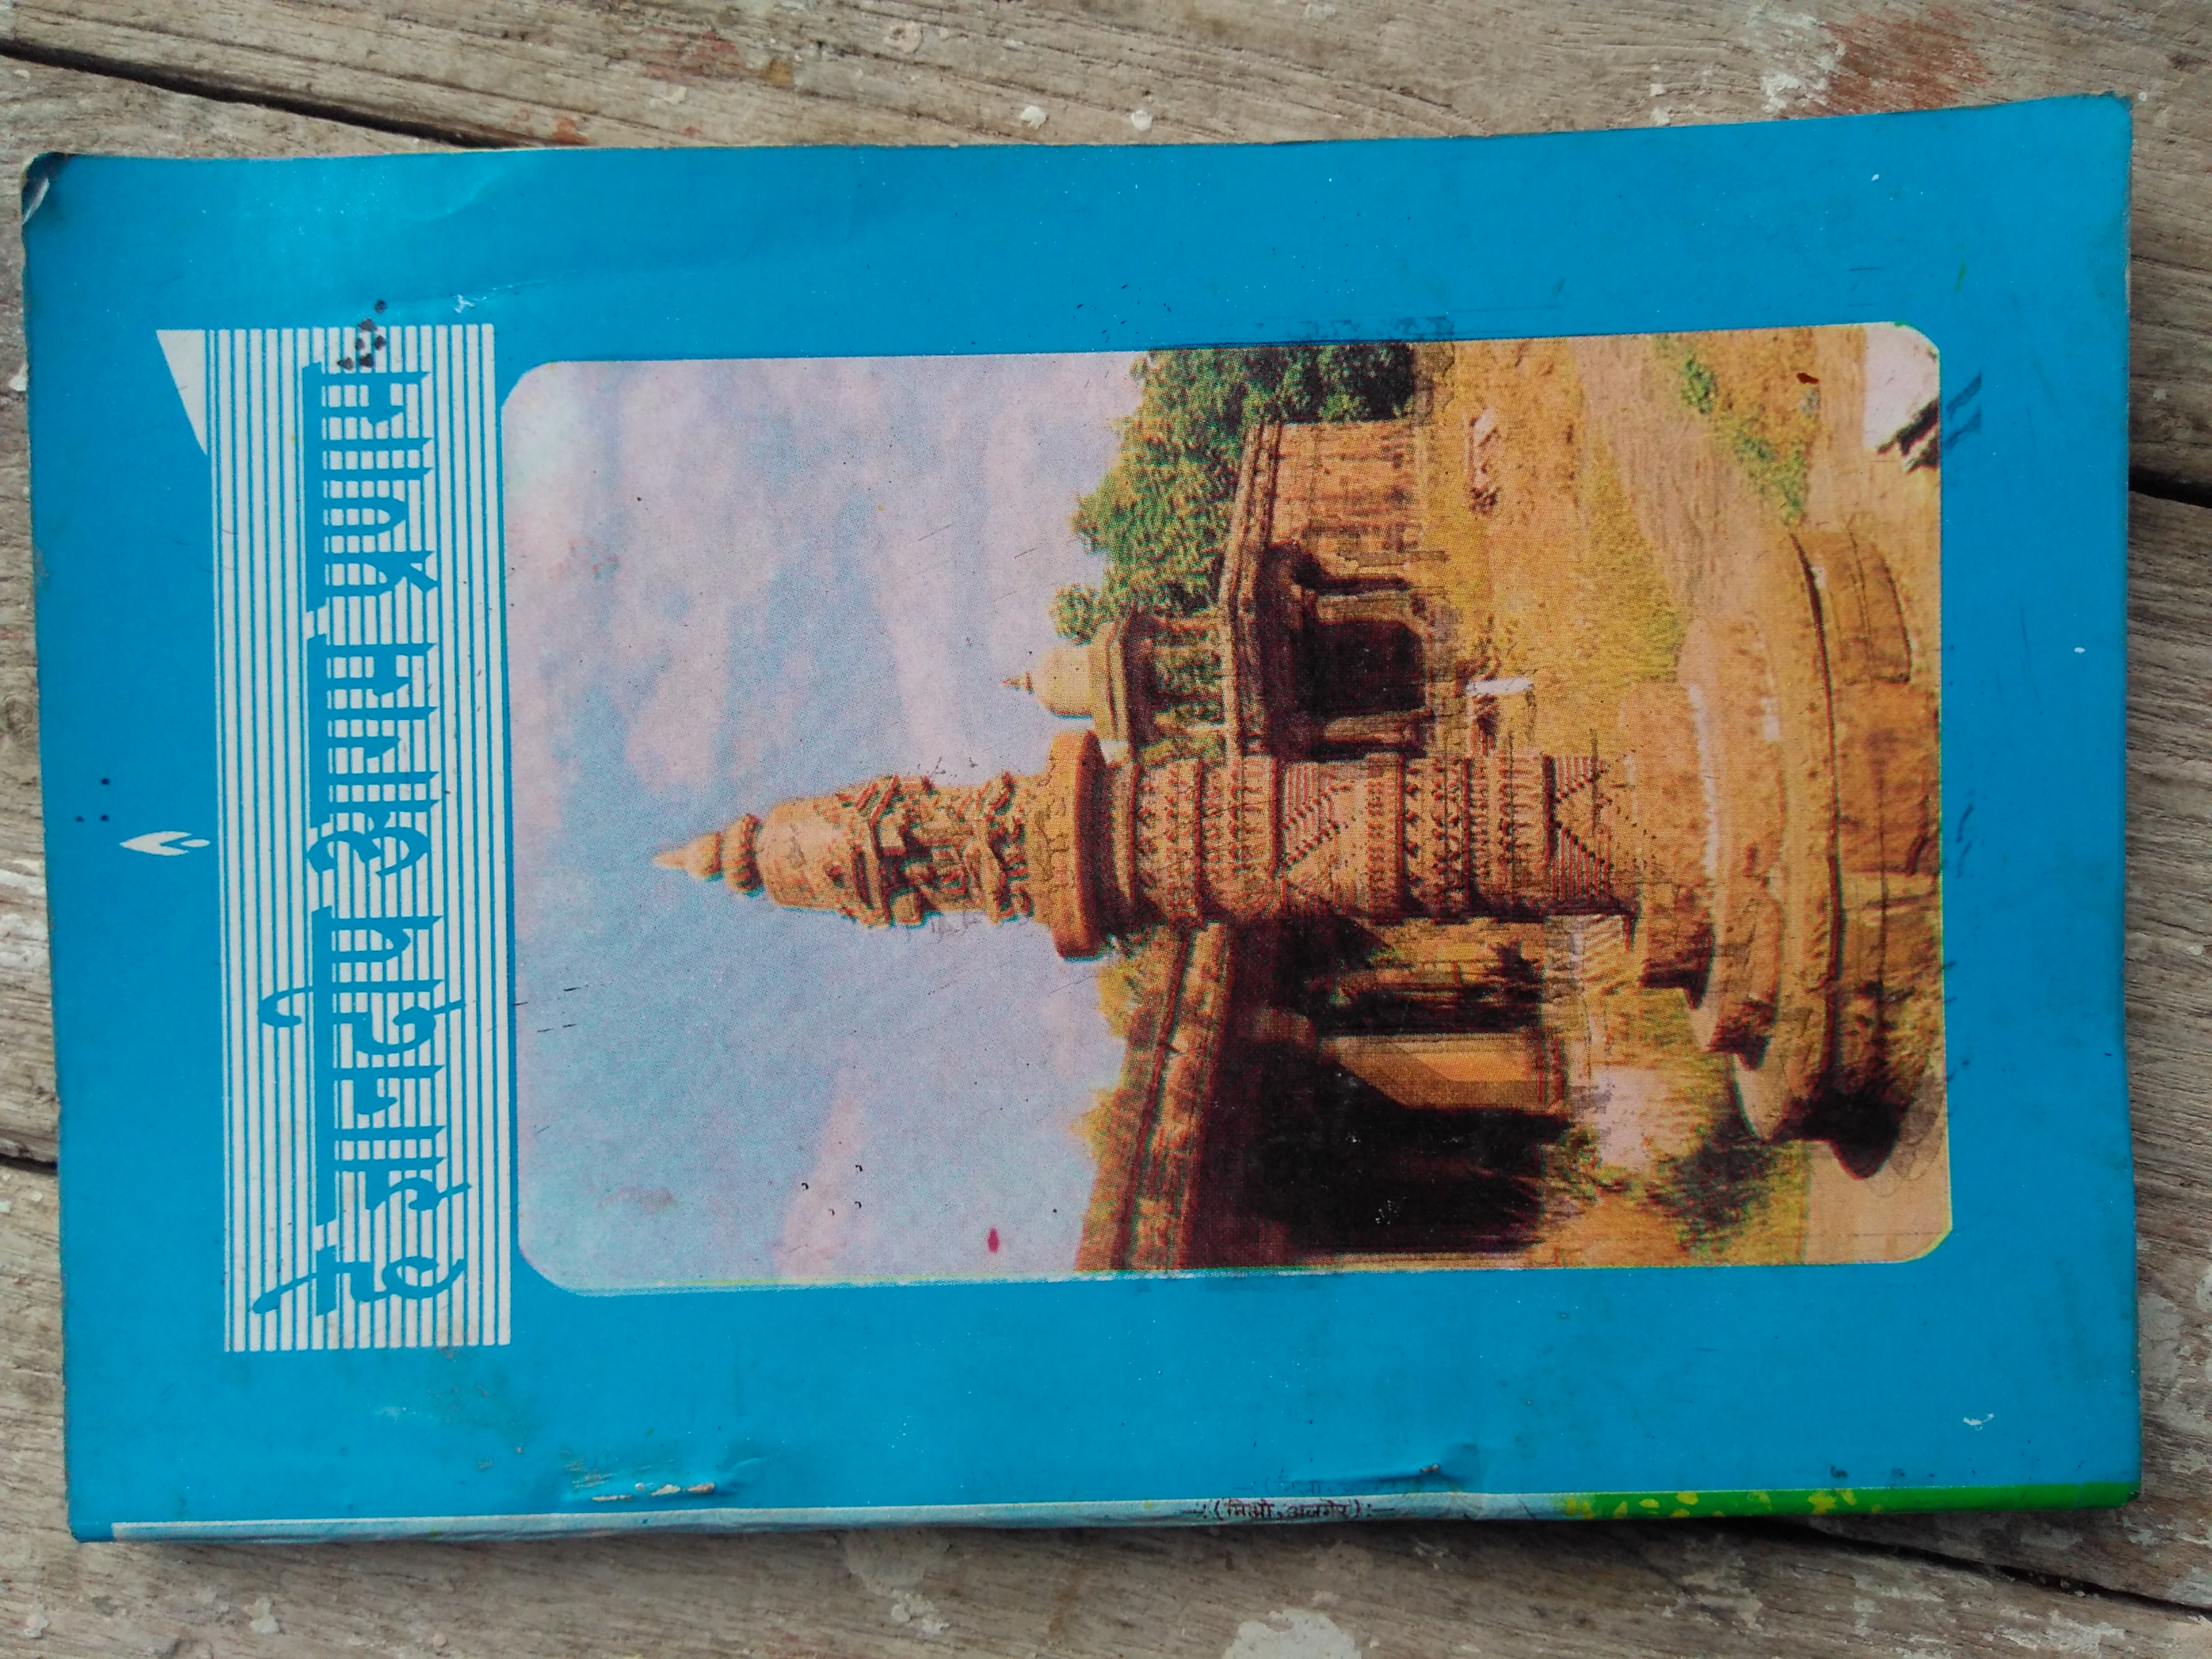 SG # Ranakpur+Stamp-300x170